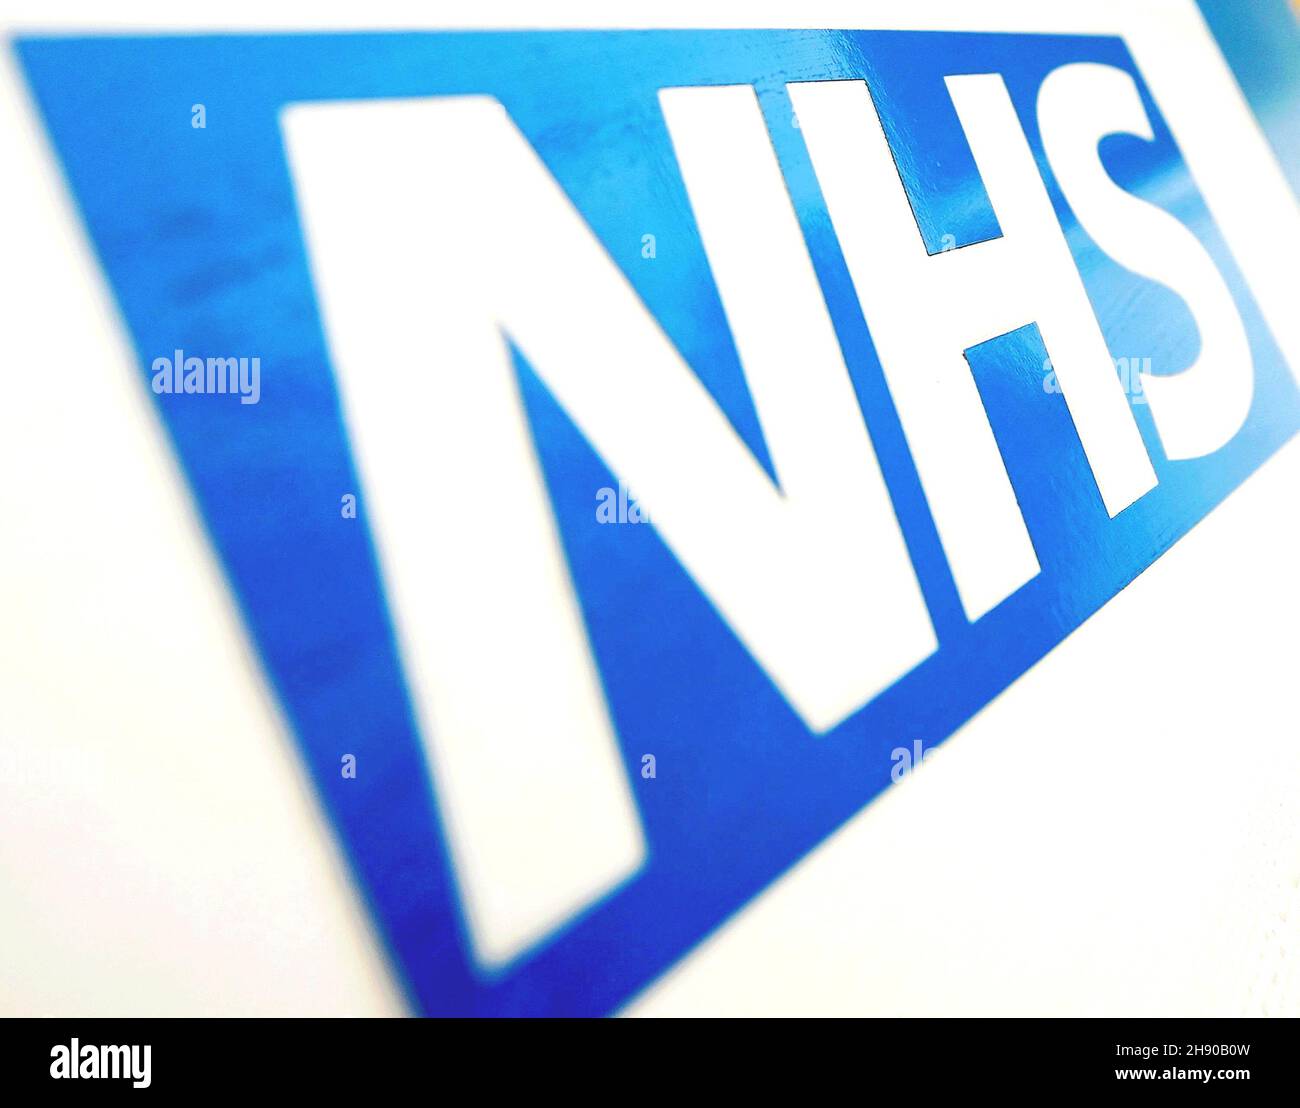 Photo du dossier datée du 06/11/10 du logo NHS.Les ministres ont annoncé que l'expansion des salles d'hôpital et les nouvelles salles d'opération aideront le NHS à faire face à des pressions supplémentaires au cours de l'hiver. Banque D'Images